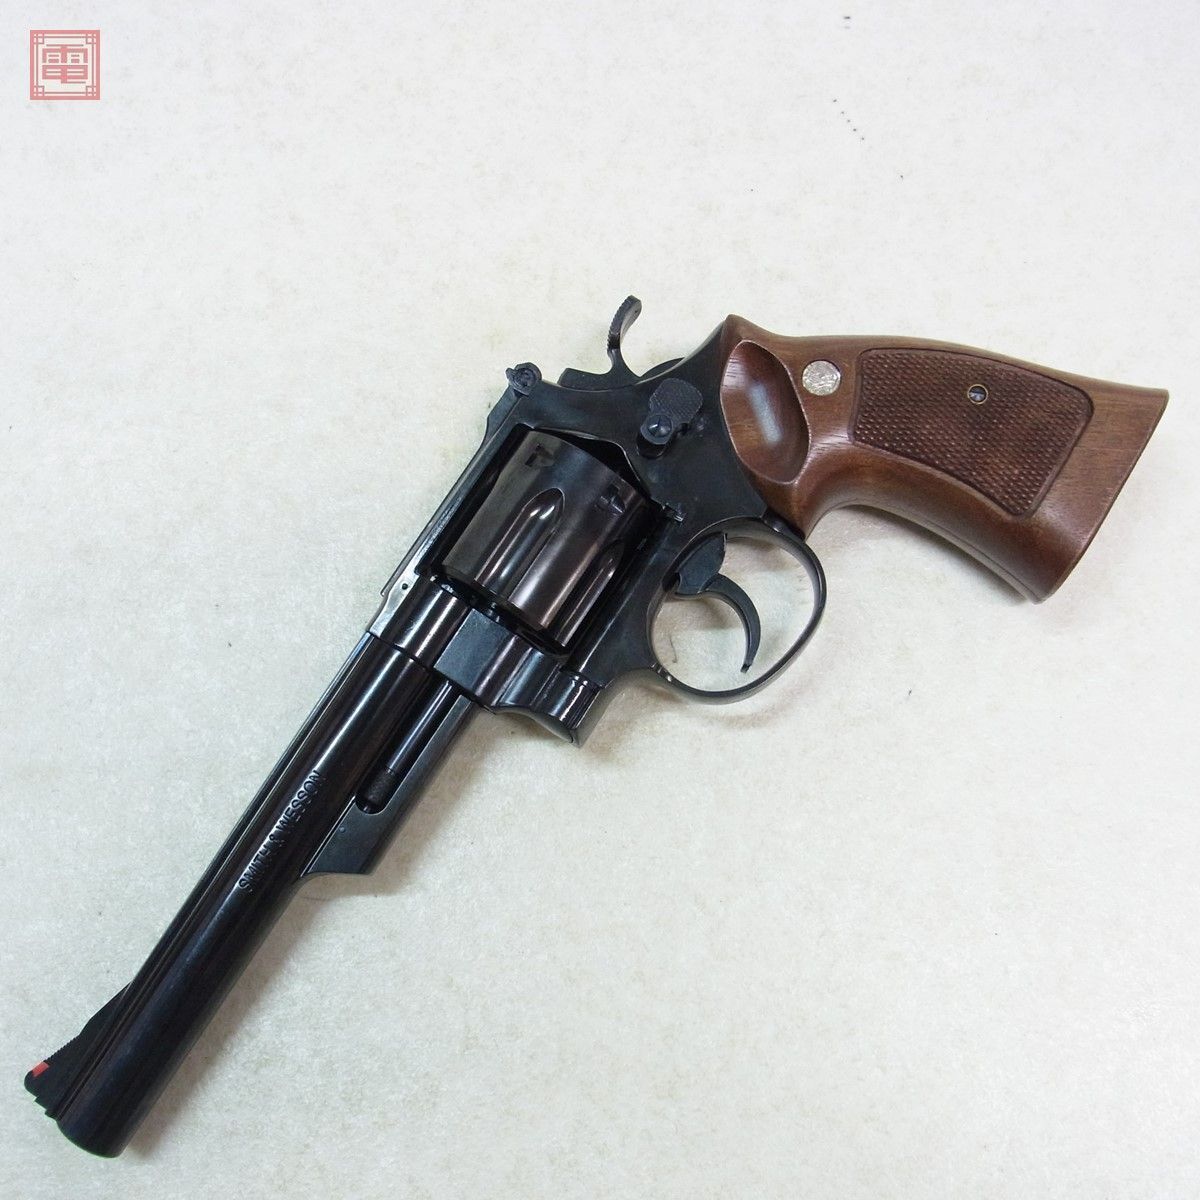  Marushin газ револьвер S&W M29 6.5 дюймовый W deep black ABS из дерева рукоятка X картридж текущее состояние товар [20